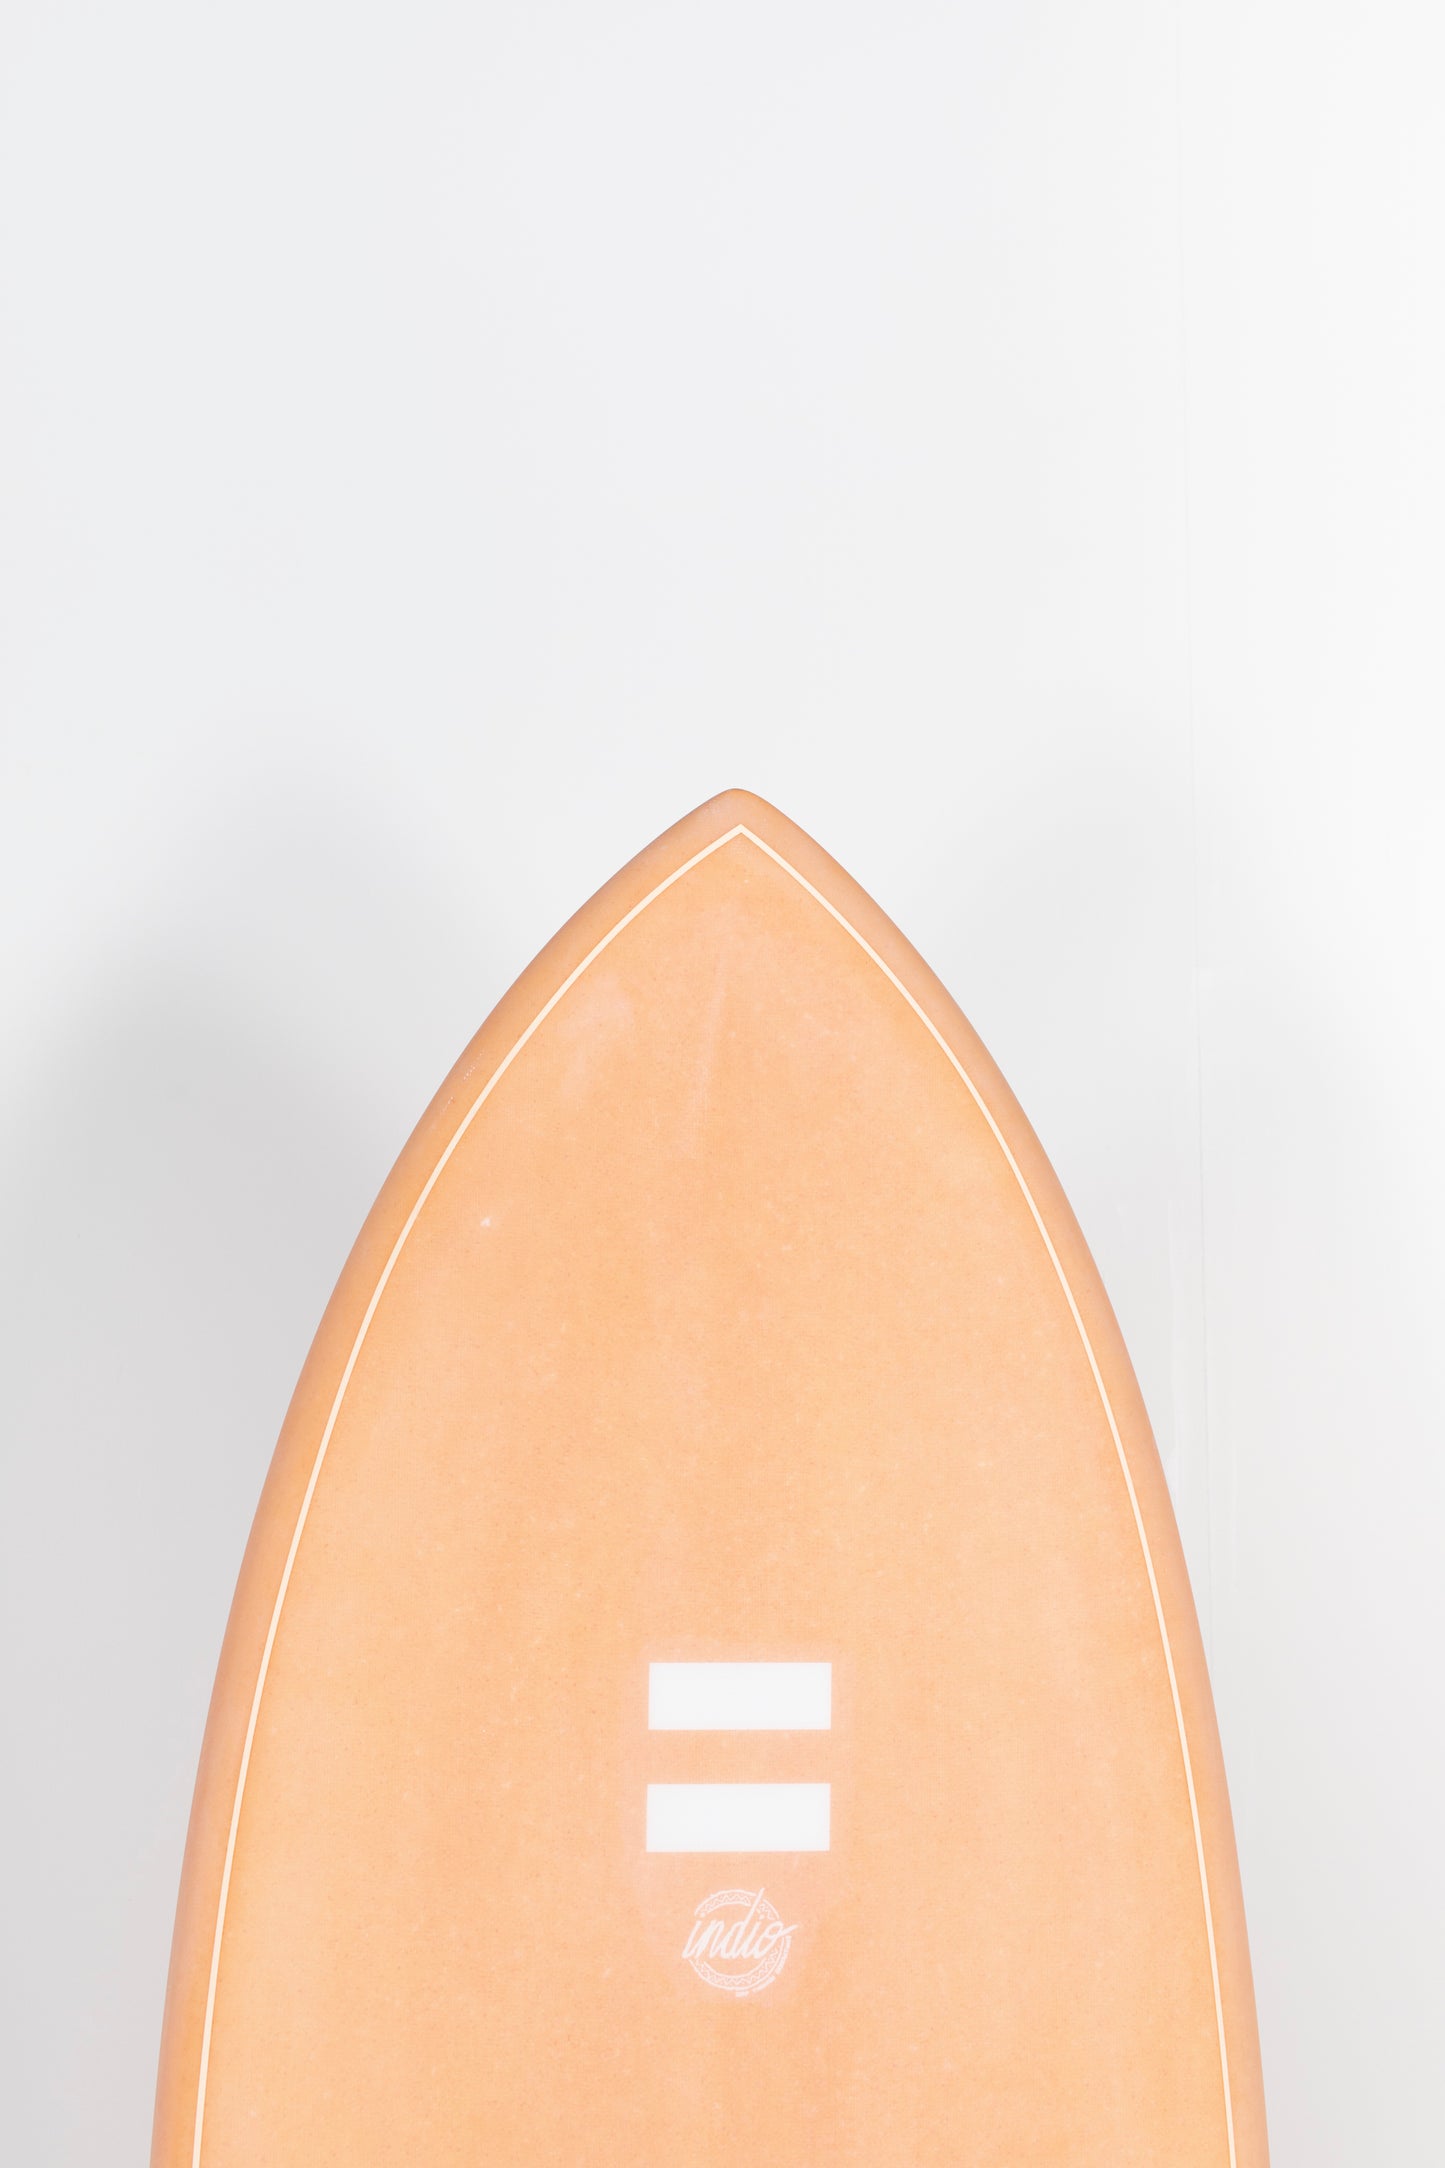 
                  
                    Indio Surfboard - DAB - 5’11” x 21 1/4 x 2 5/8 x 39.9L - NS
                  
                